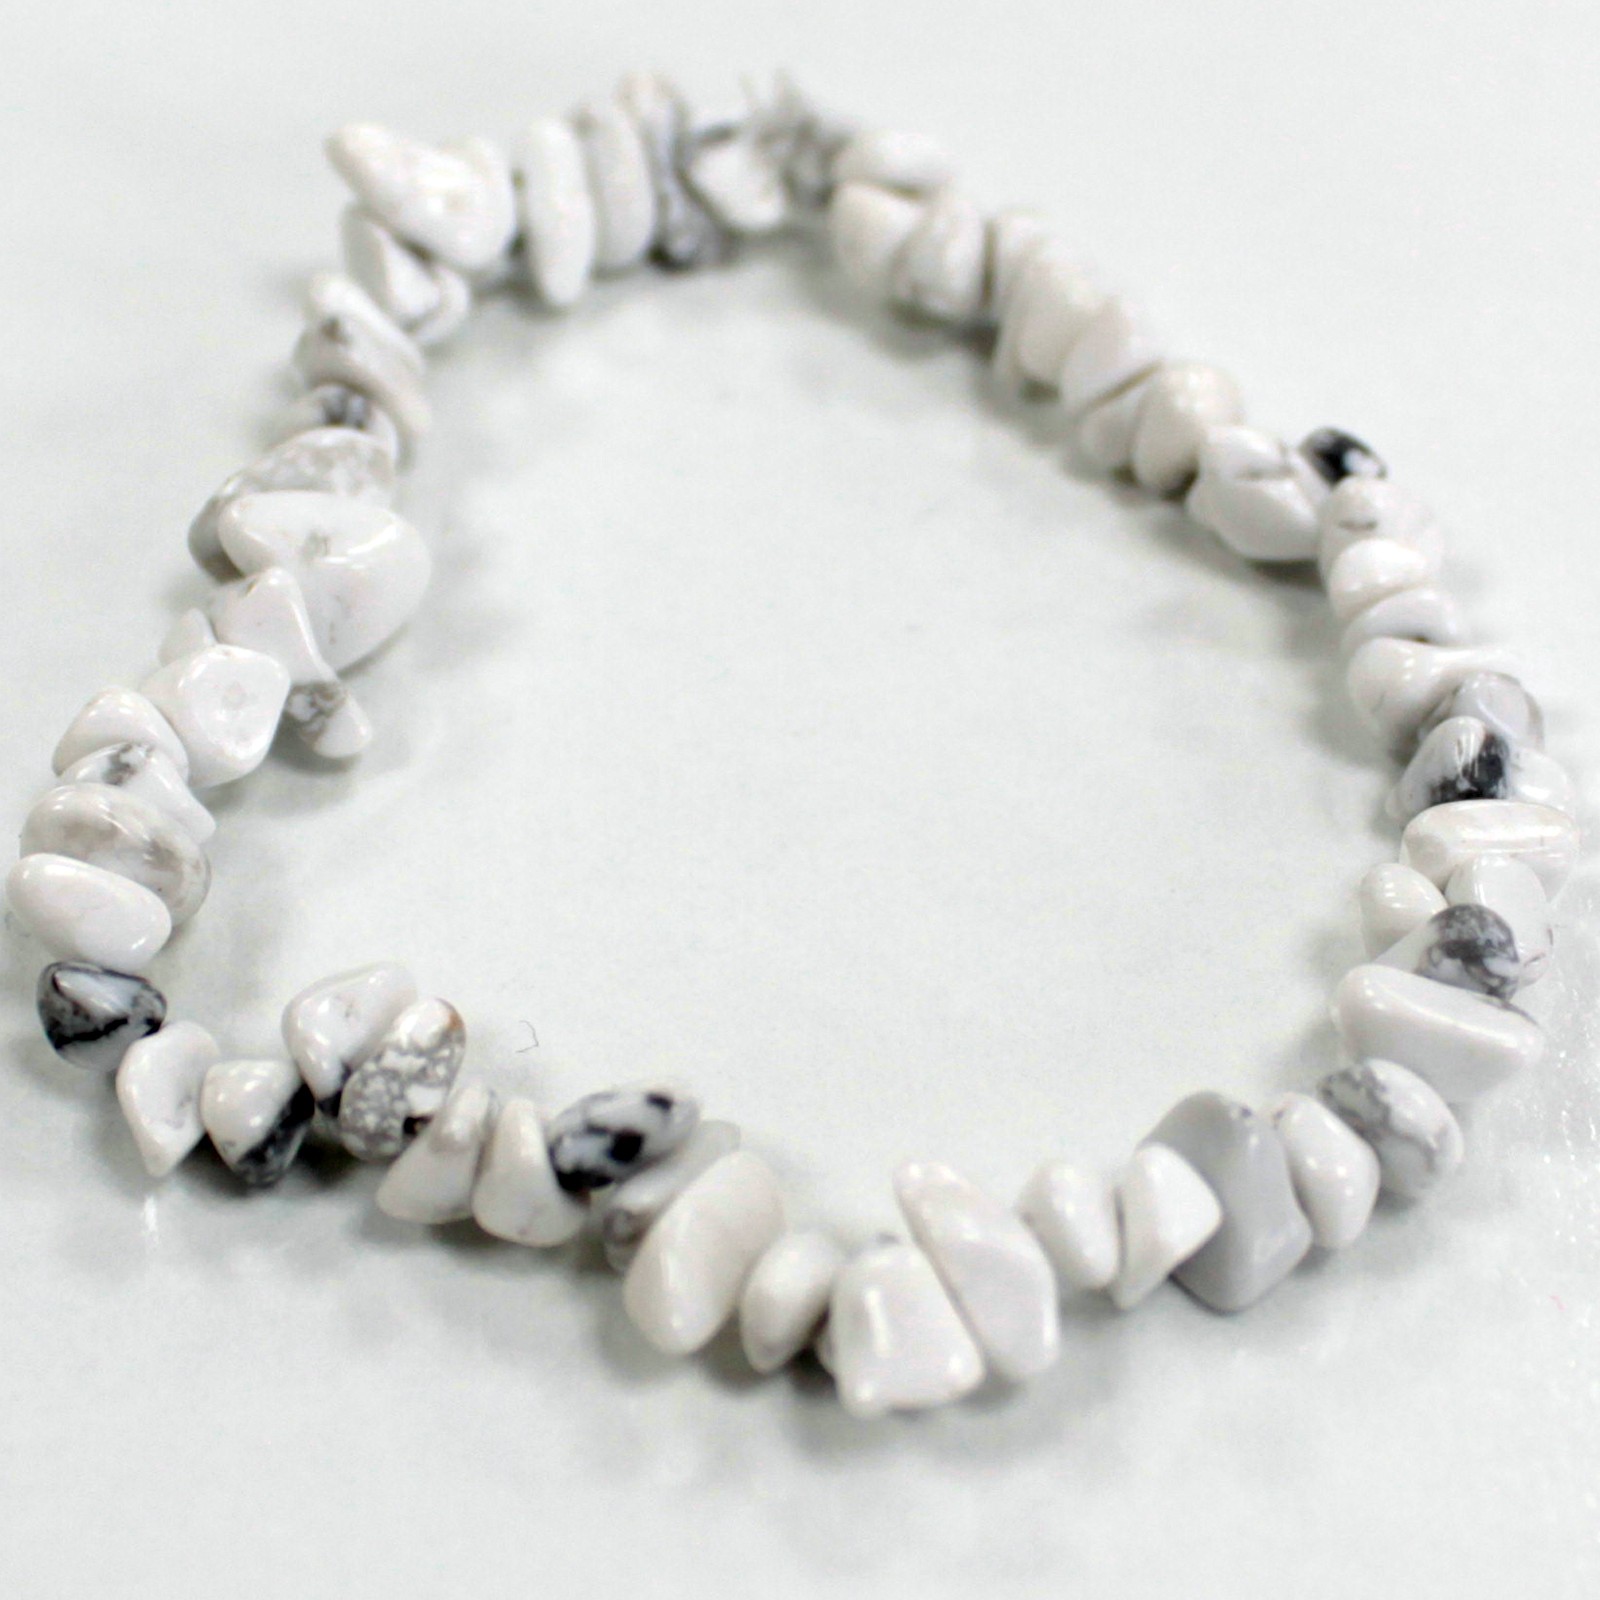 3 x Chipstone Bracelets - White Jasper